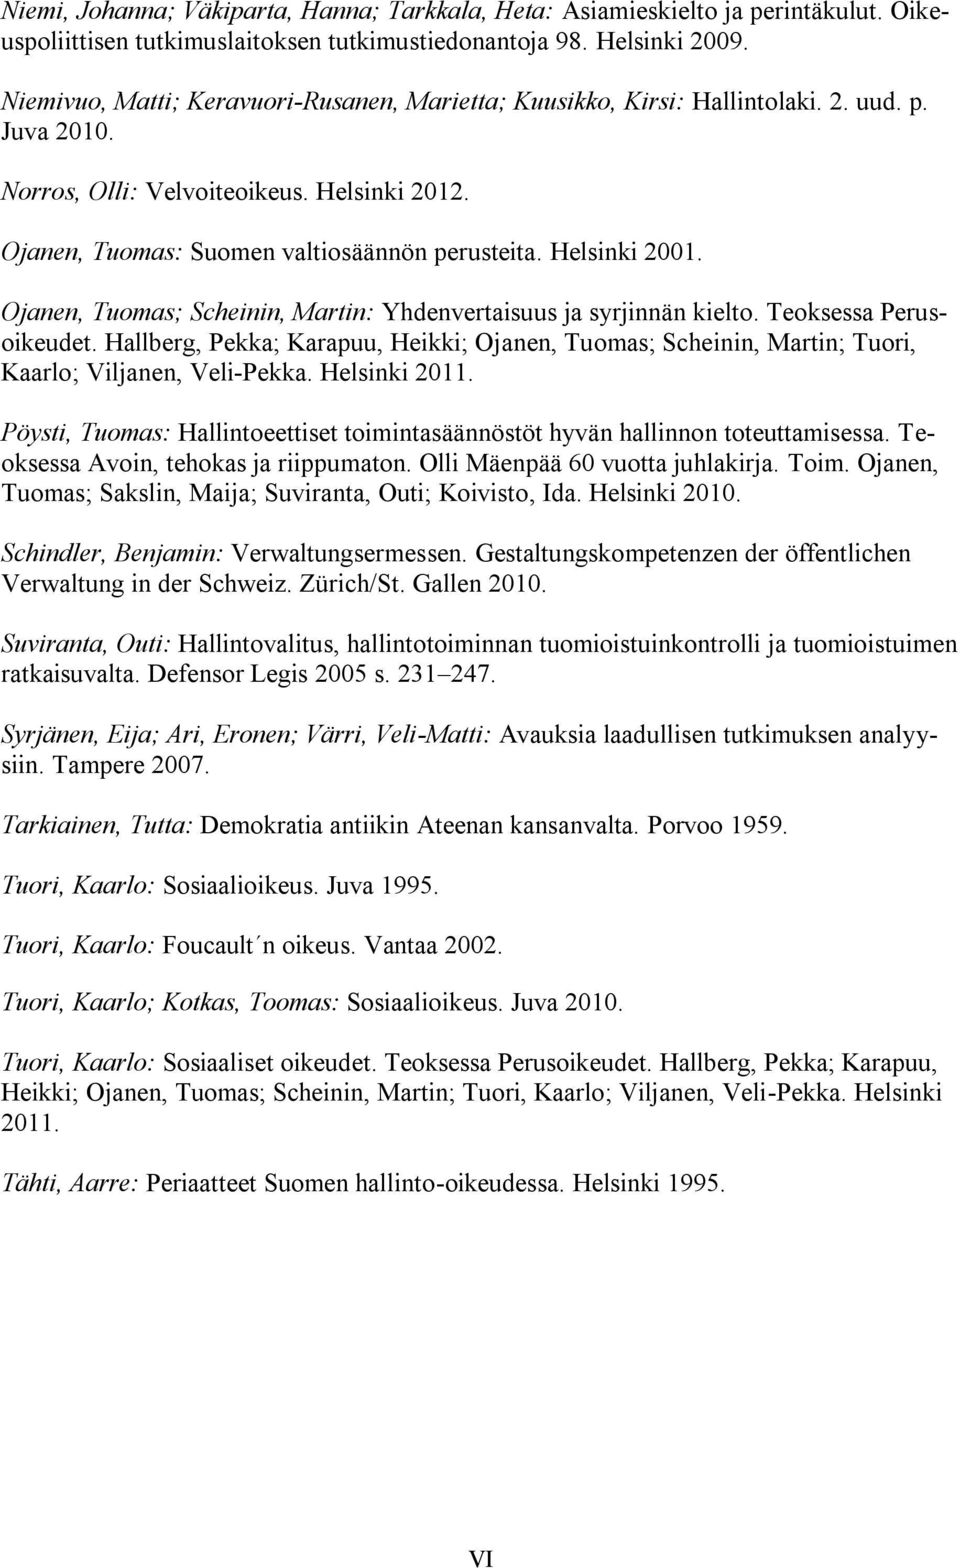 Helsinki 2001. Ojanen, Tuomas; Scheinin, Martin: Yhdenvertaisuus ja syrjinnän kielto. Teoksessa Perusoikeudet.